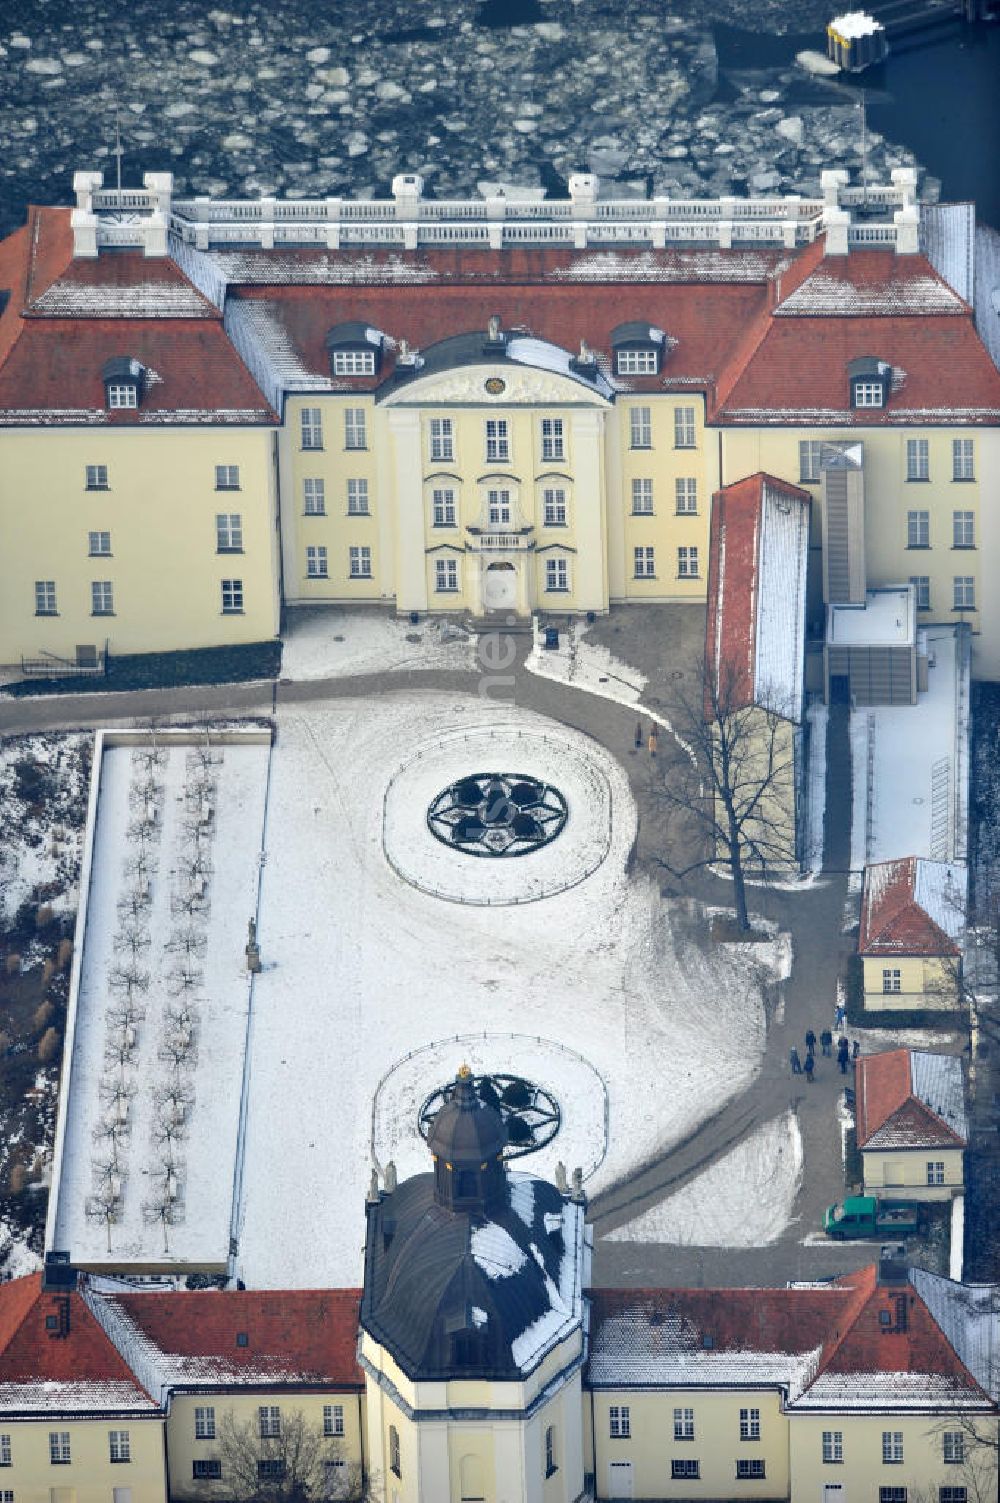 Berlin von oben - Blick auf den winterlich verschneite Schloß Köpenick